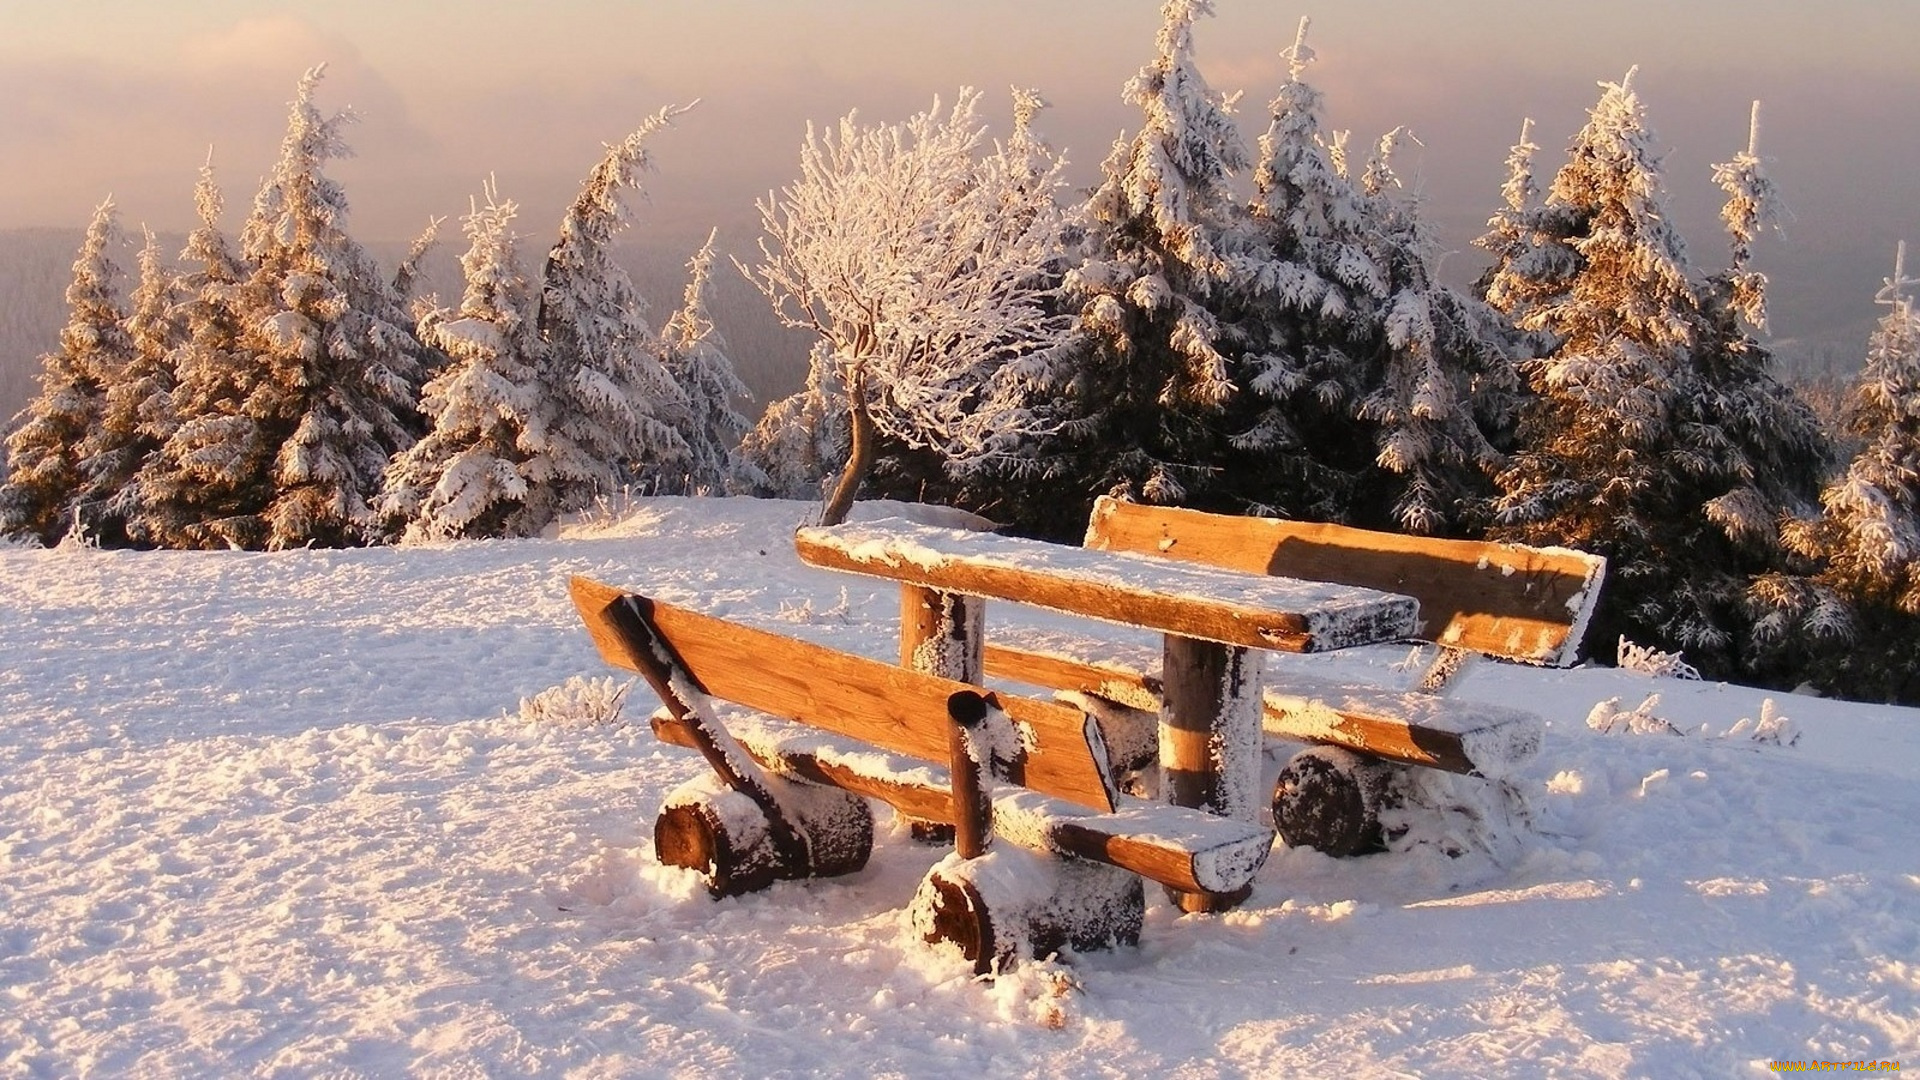 природа, зима, снег, деревья, туман, склон, площадка, скамейки, стол